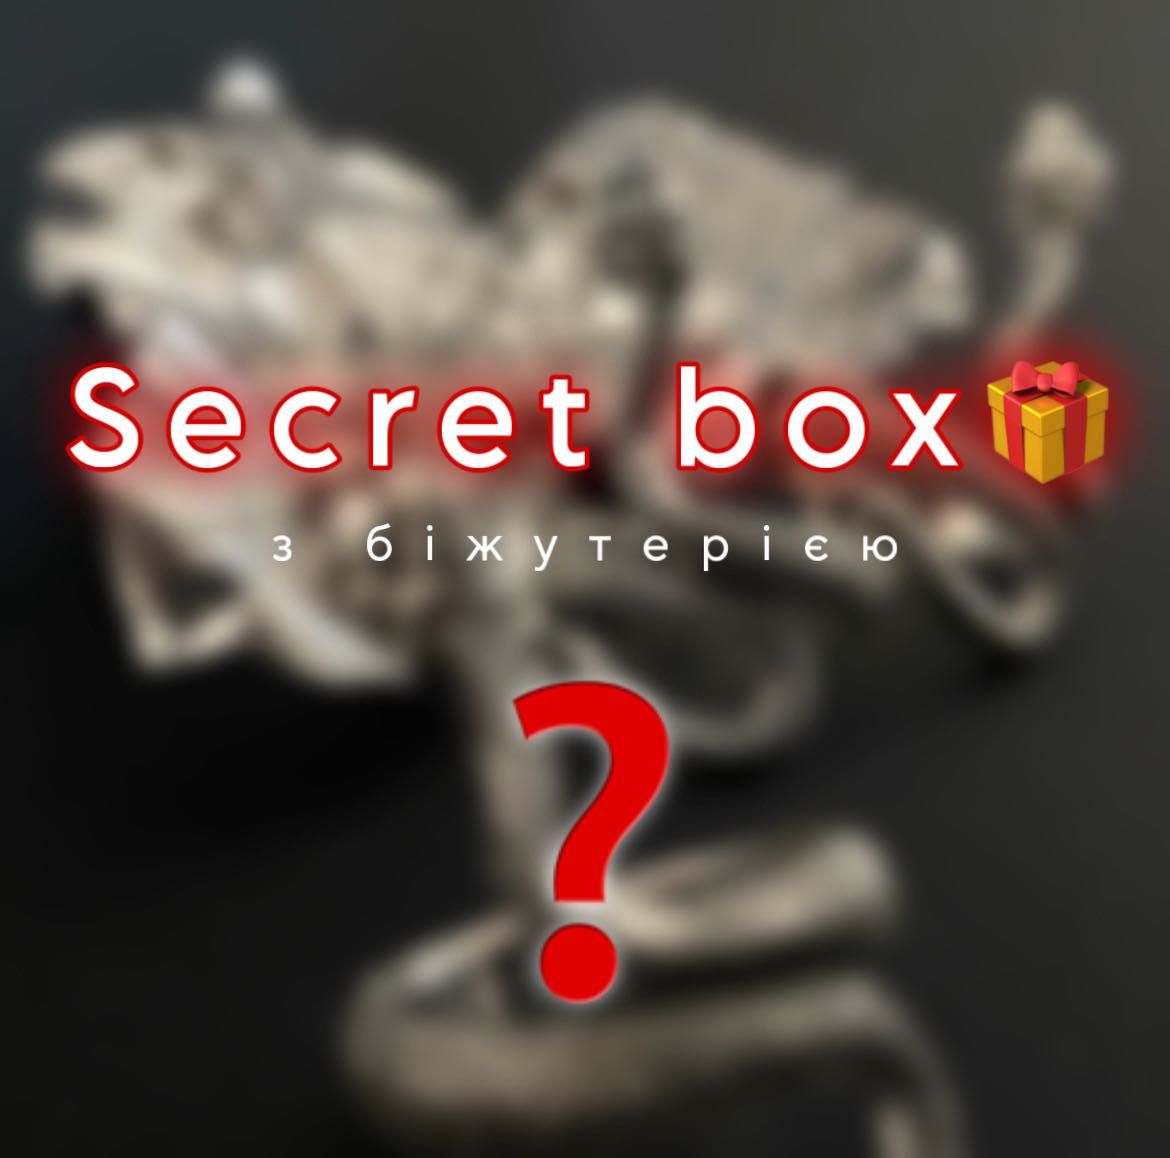 Секретний бокс | Secret box